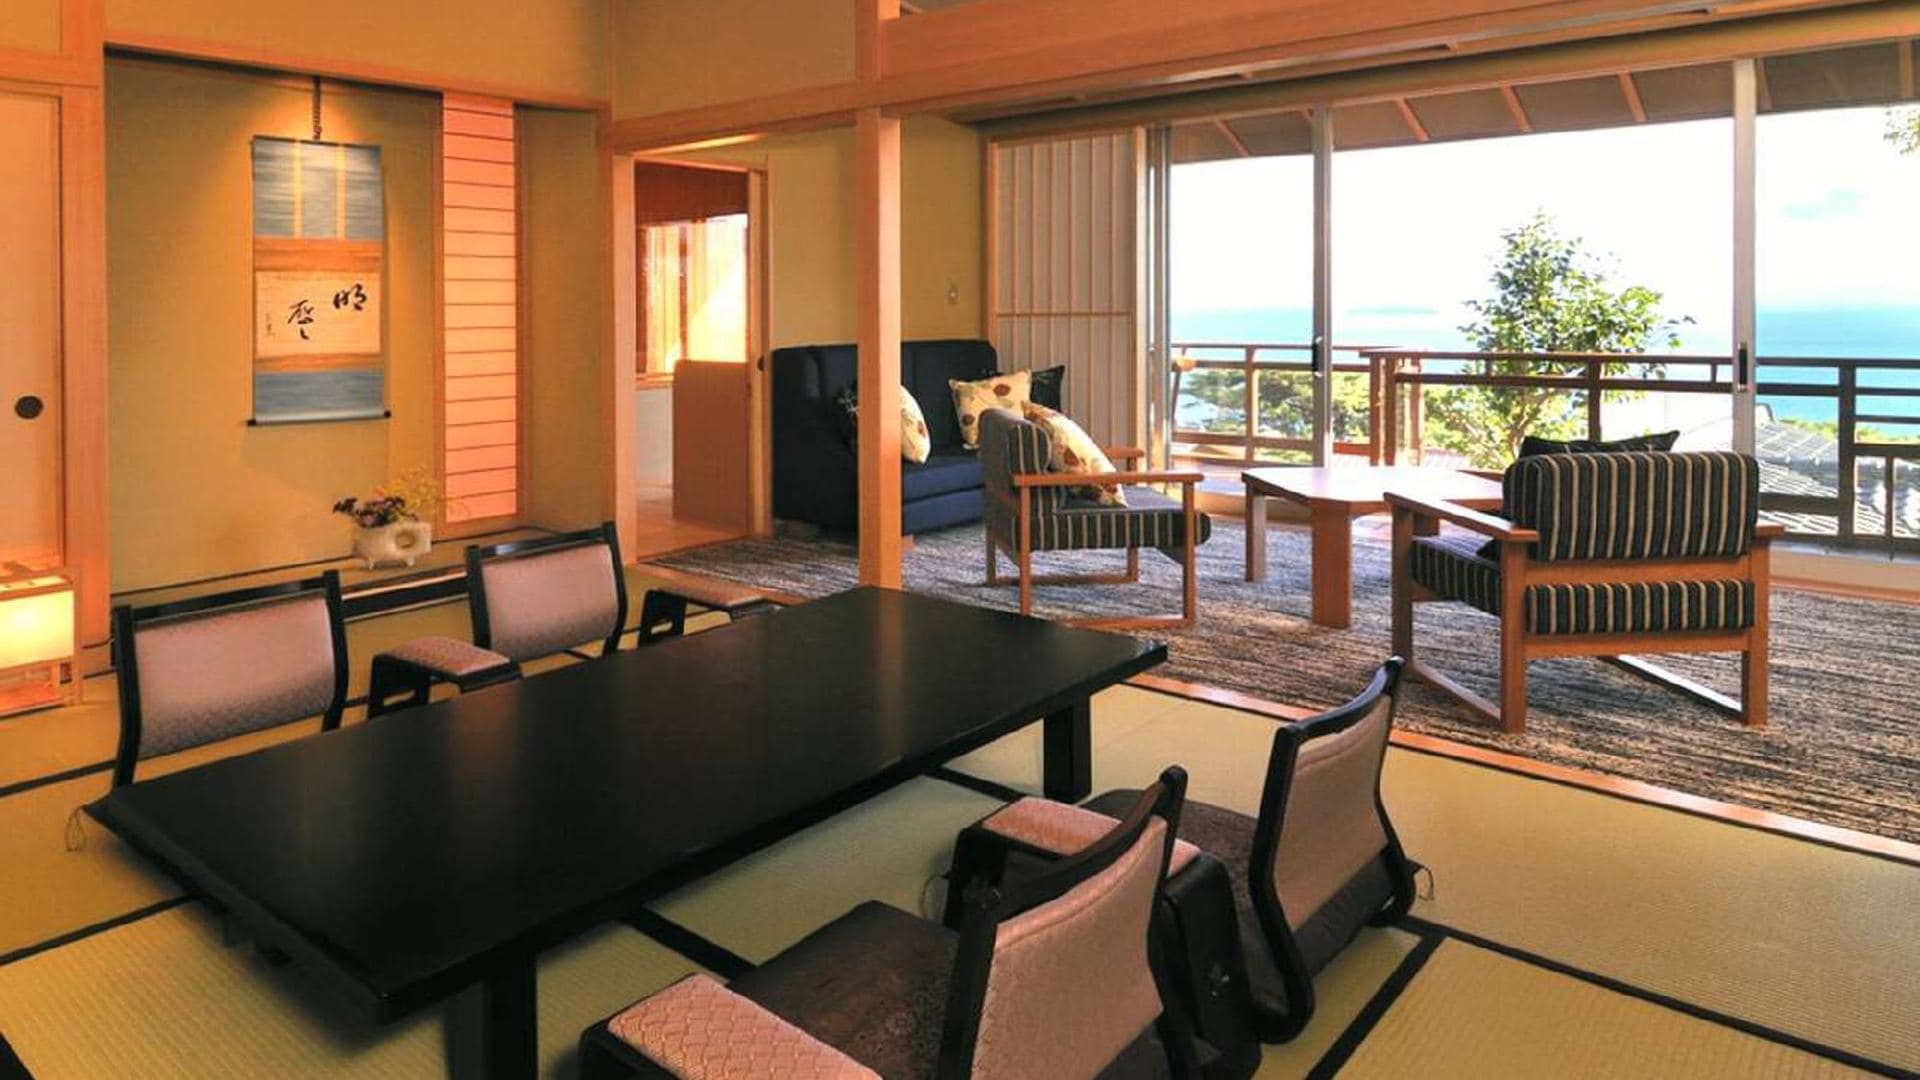 [ตัวอย่างห้อง DX Japanese and Western] เป็นห้องที่มีบรรยากาศเงียบสงบพร้อมวิวที่สวยงาม